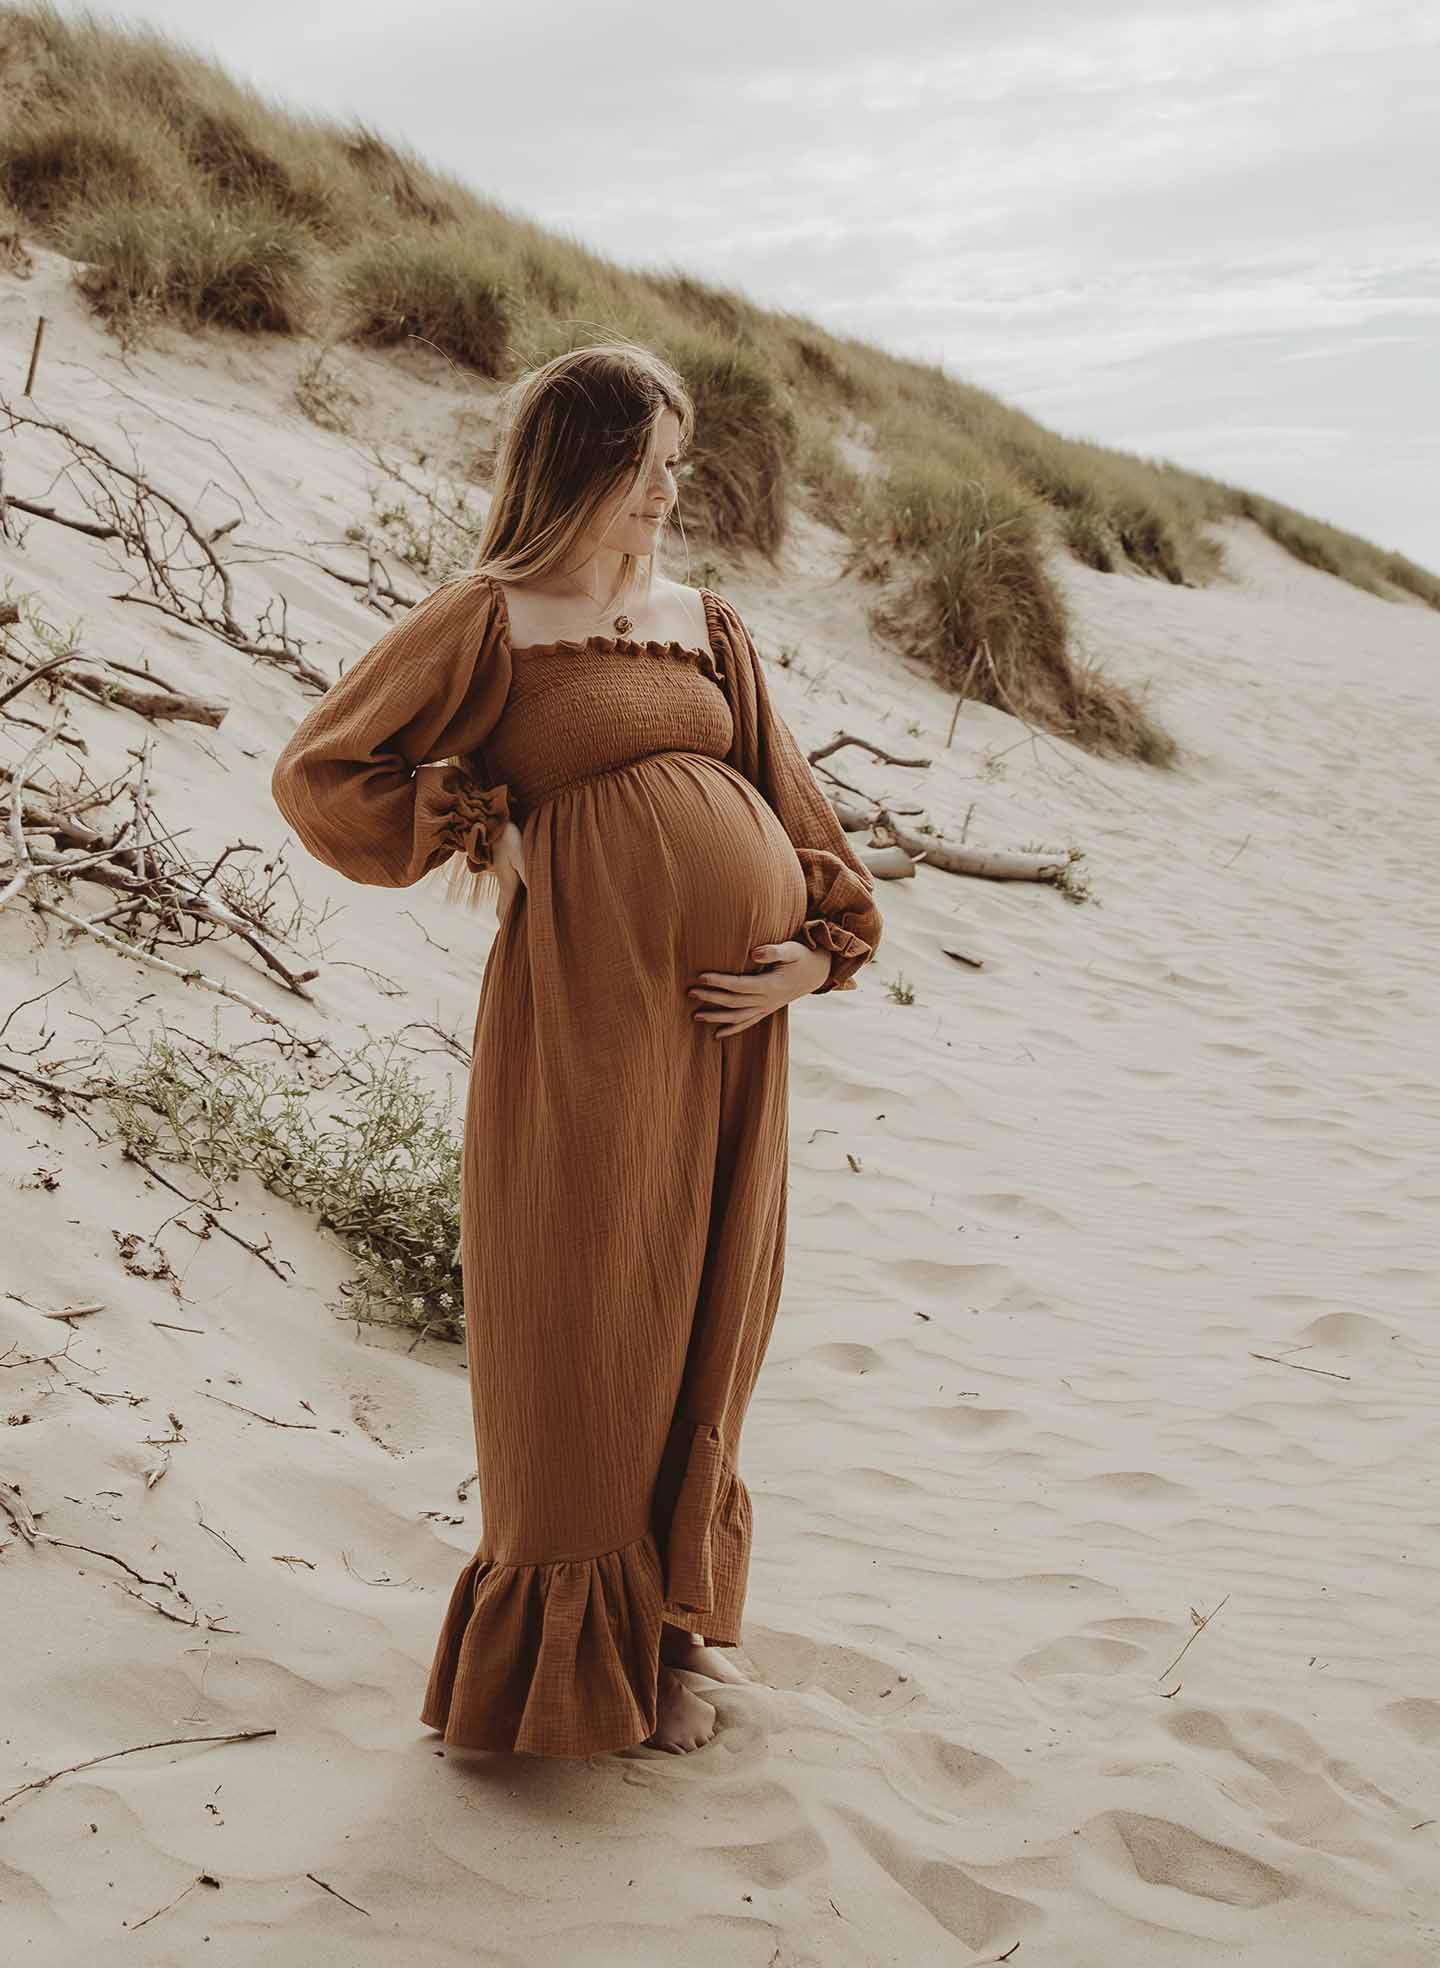 zwangerschap zwangerschapsshoot terneuzen zwangerschapsfotograaf terneuzen